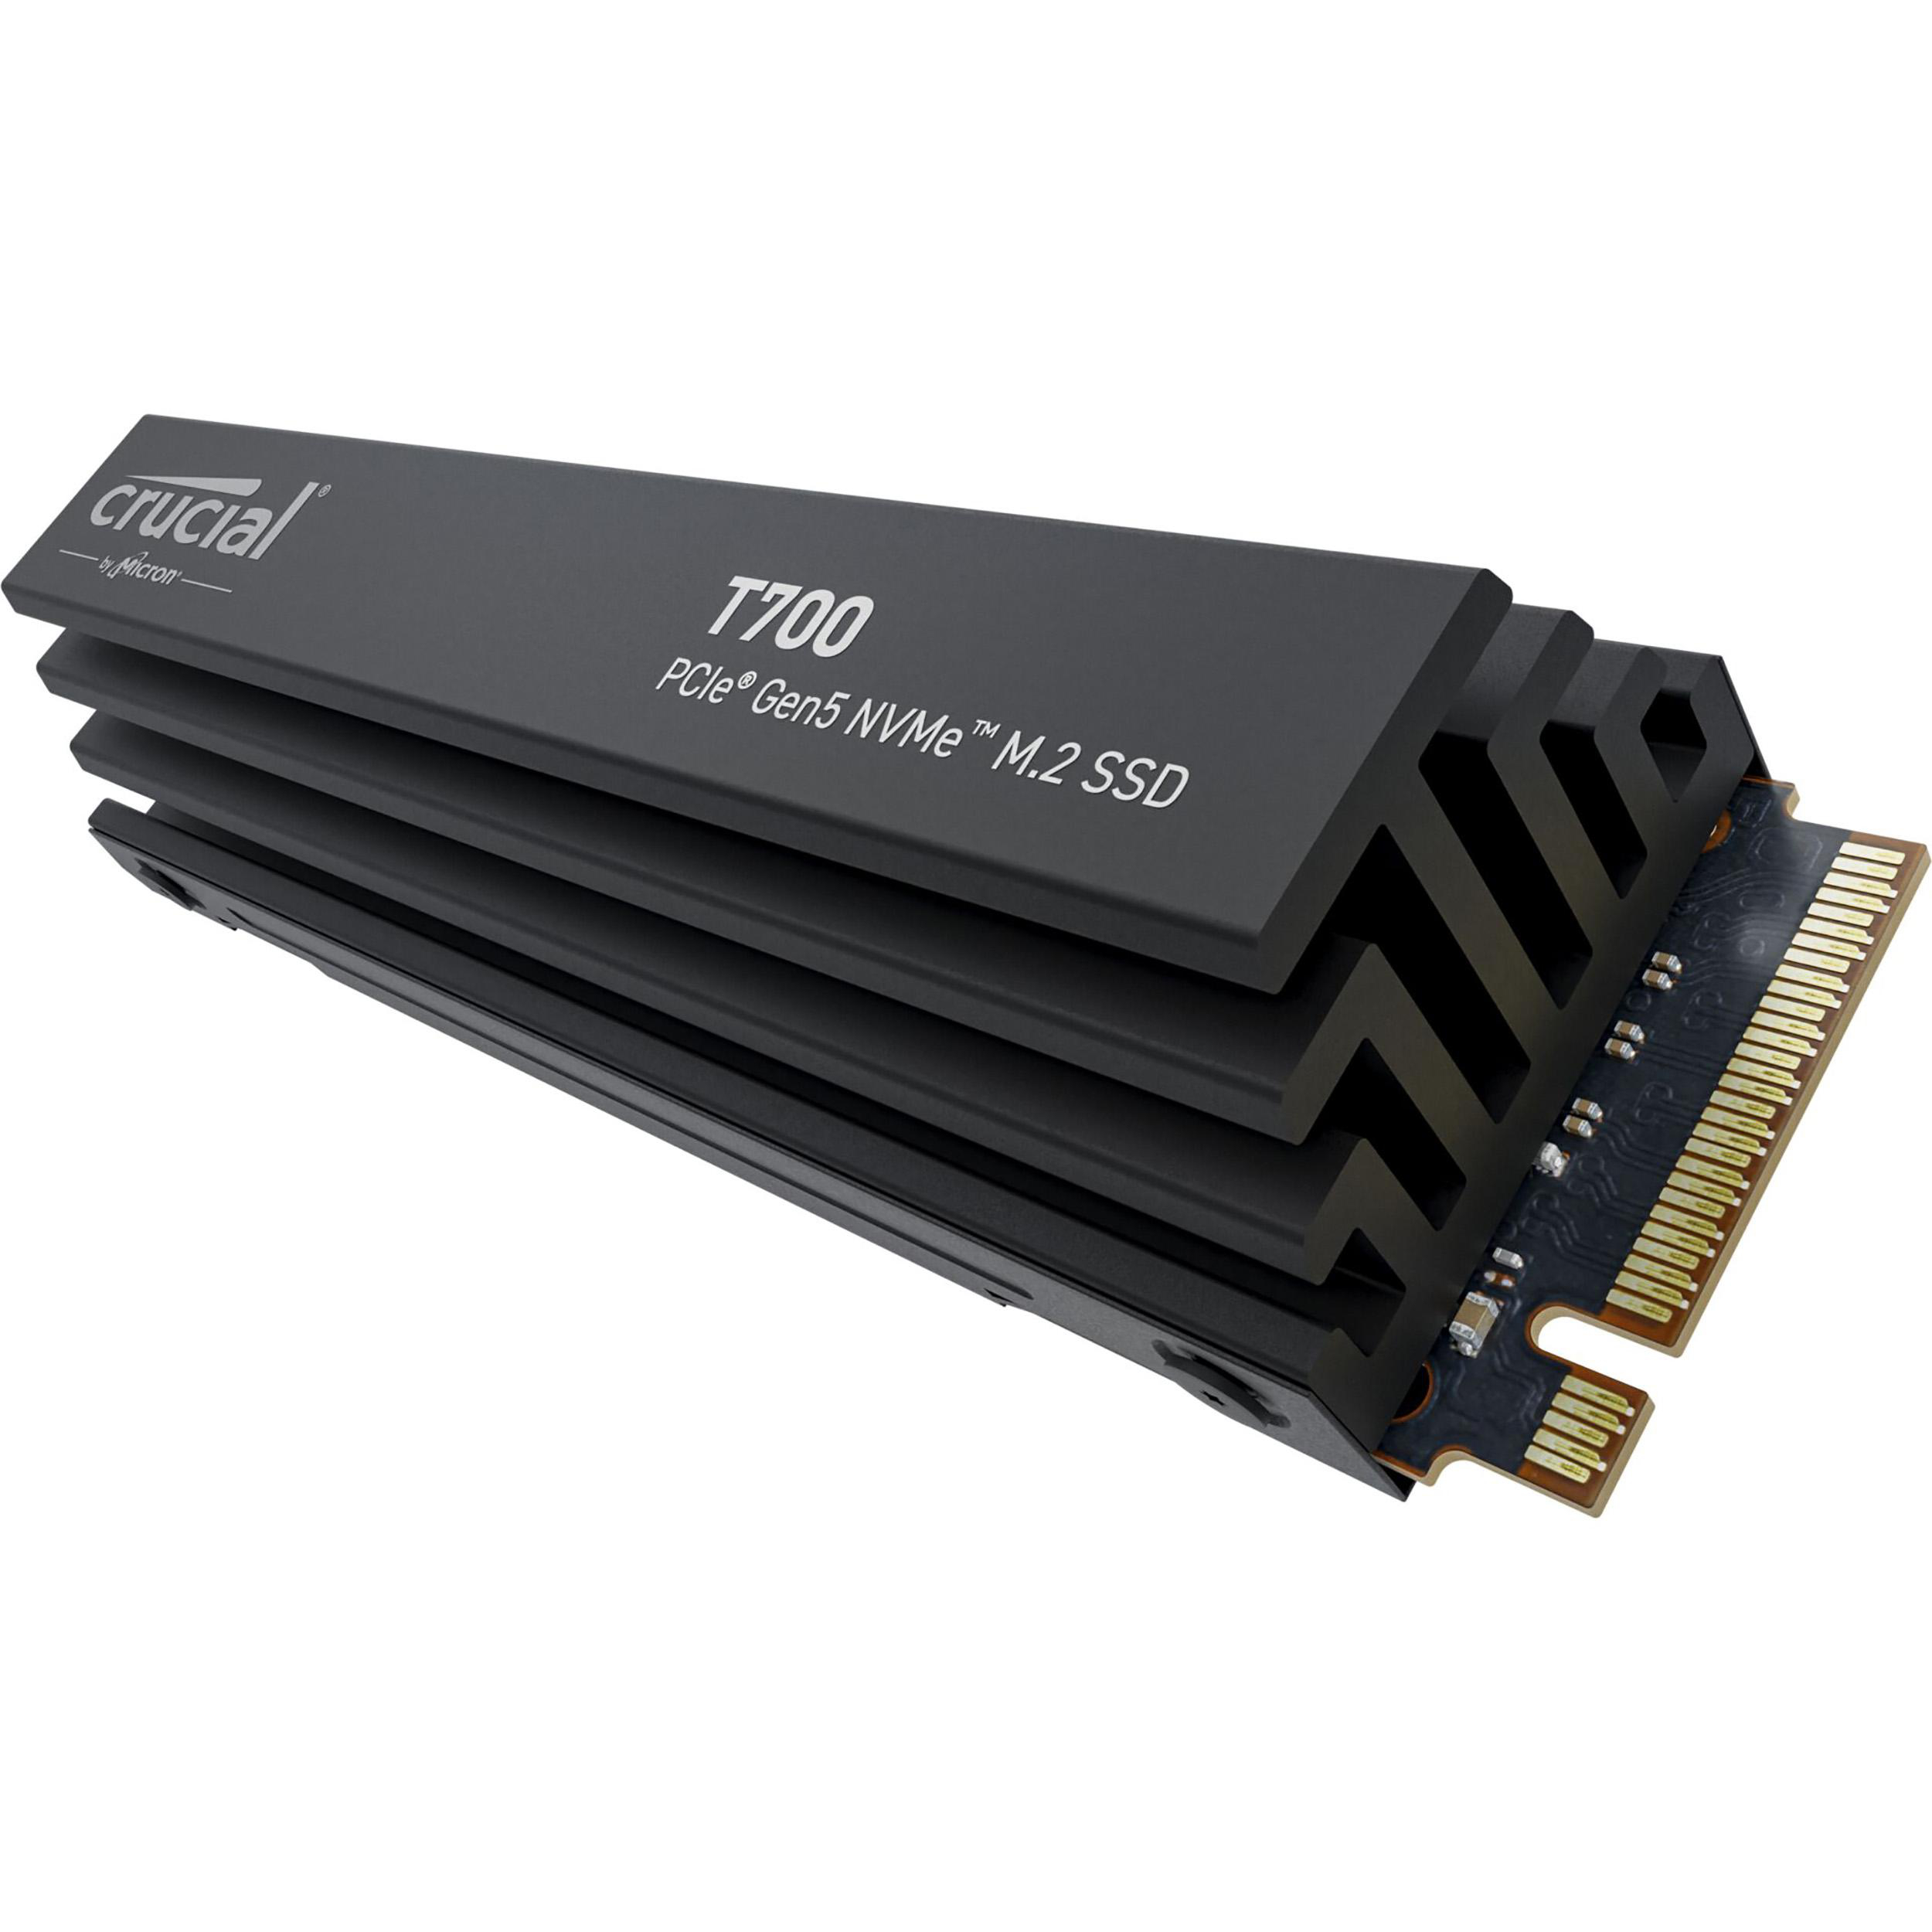 CRUCIAL T700 mit NVMe TB 1 SSD, Heatsink SSD PCIe M.2, intern Gen5